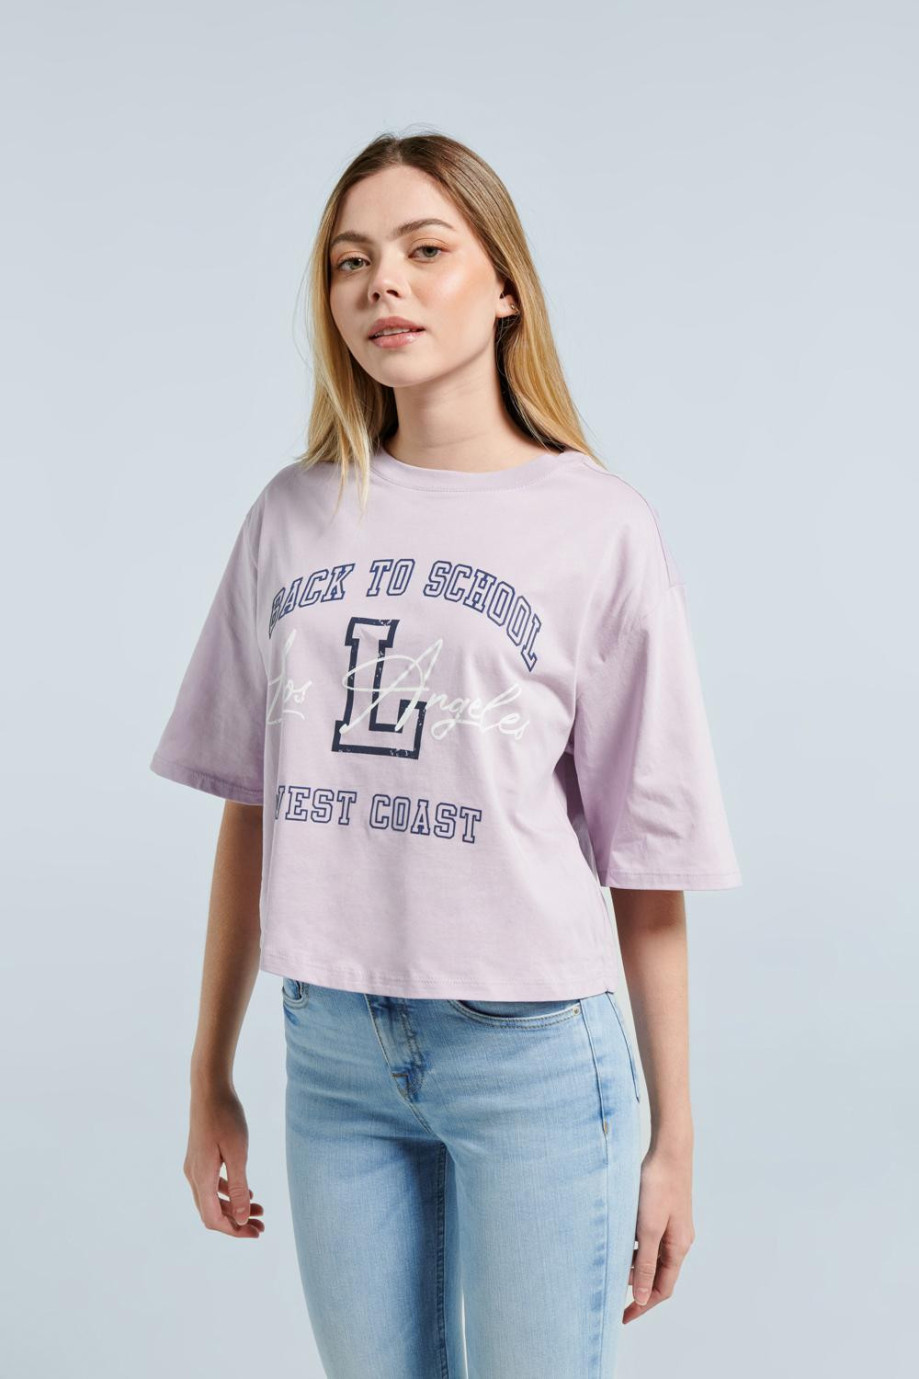 Camiseta lila clara crop top con texto college en frente y cuello redondo